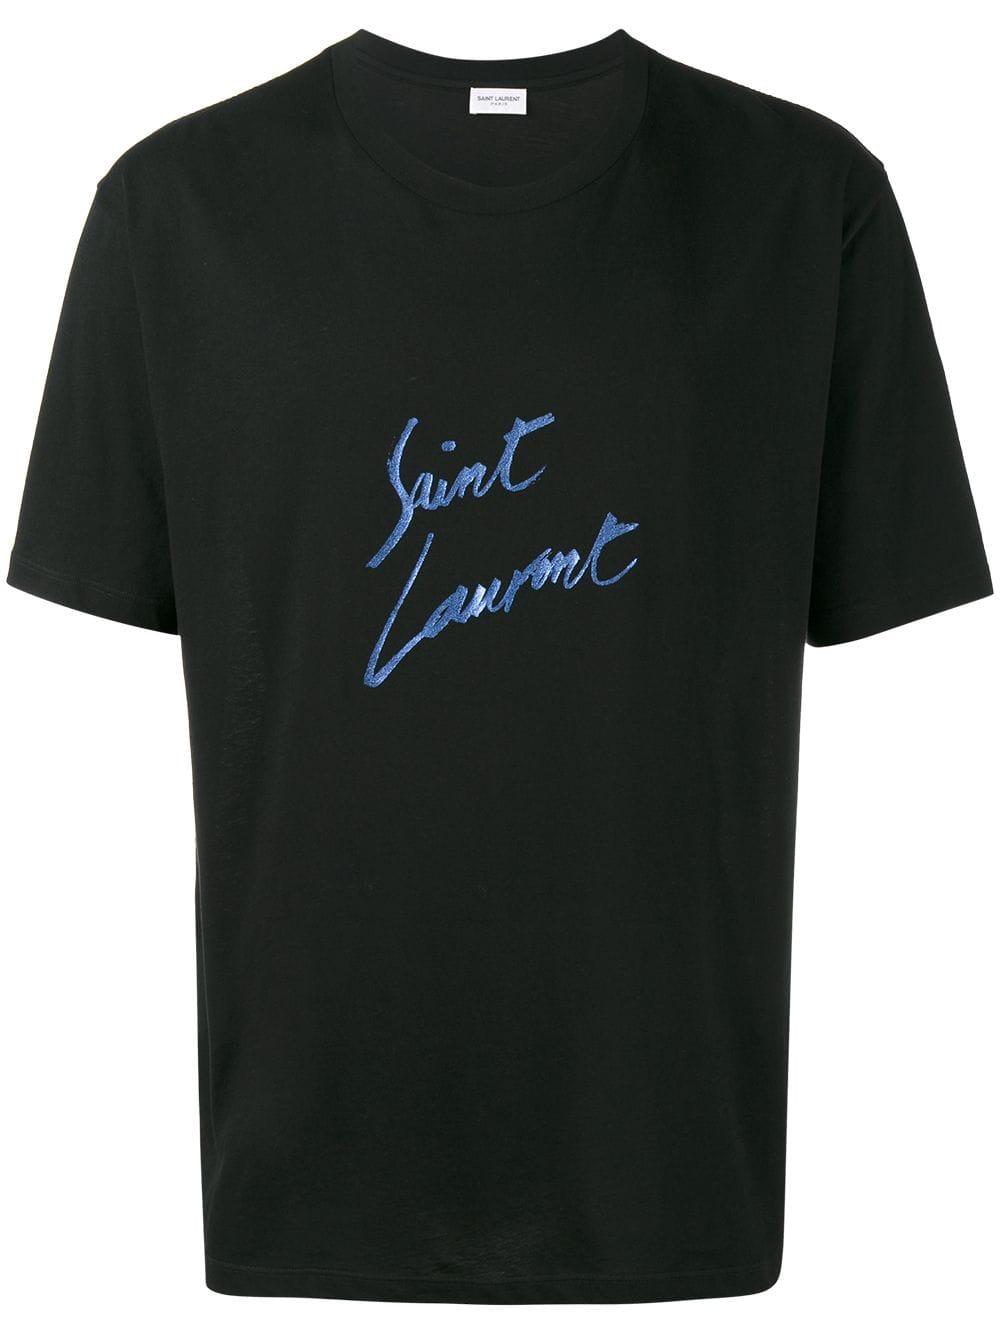 Saint Laurent Cotton Signature Print T-shirt in Black for Men - Save 77 ...